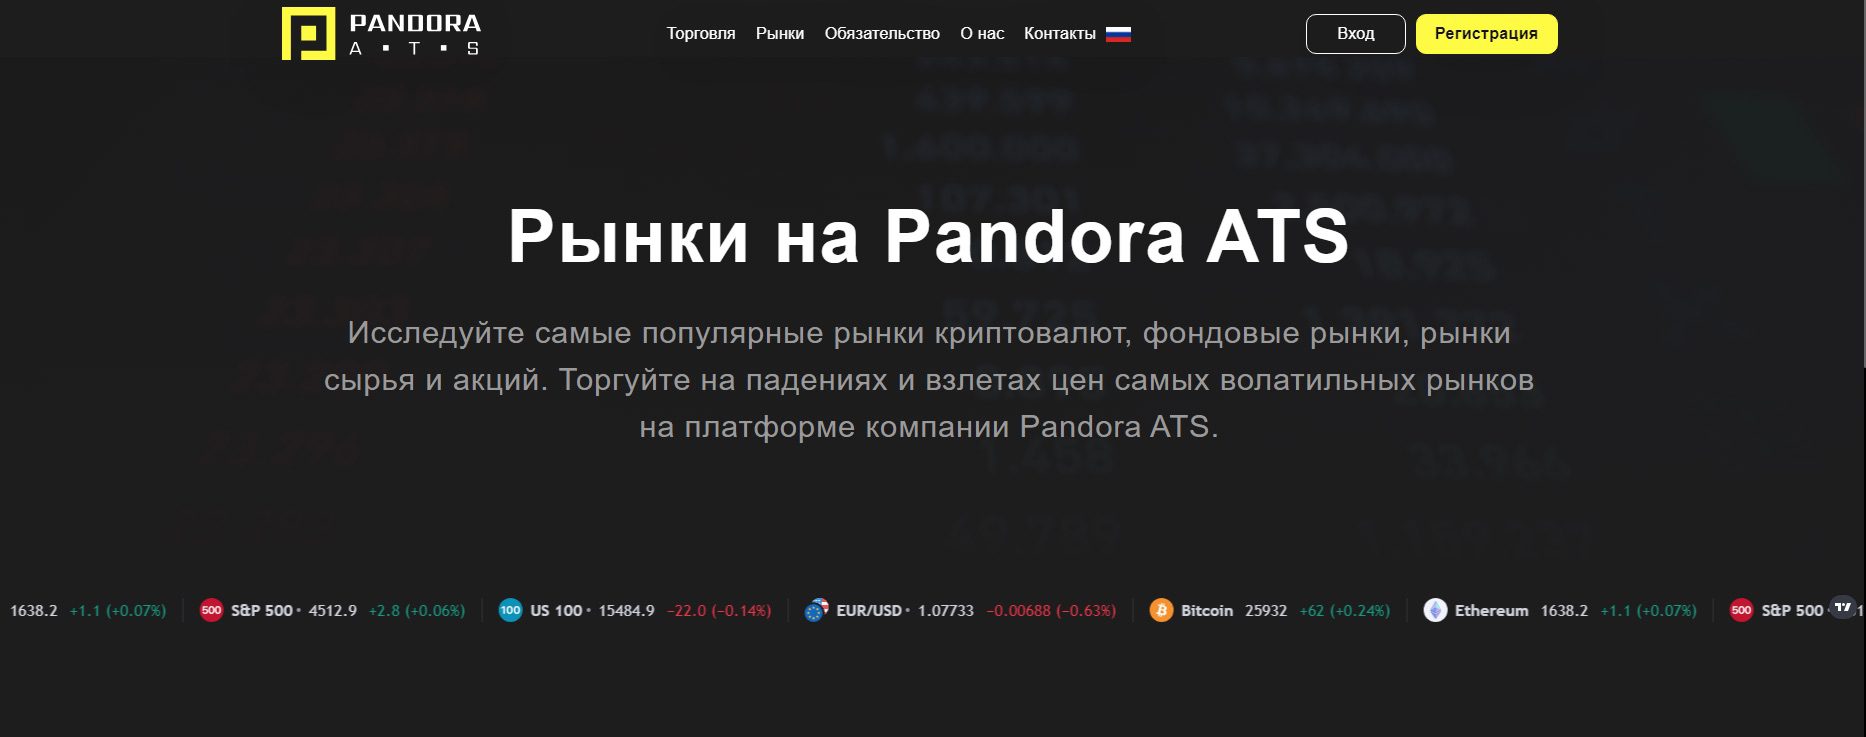 Сайт Pandora ATS